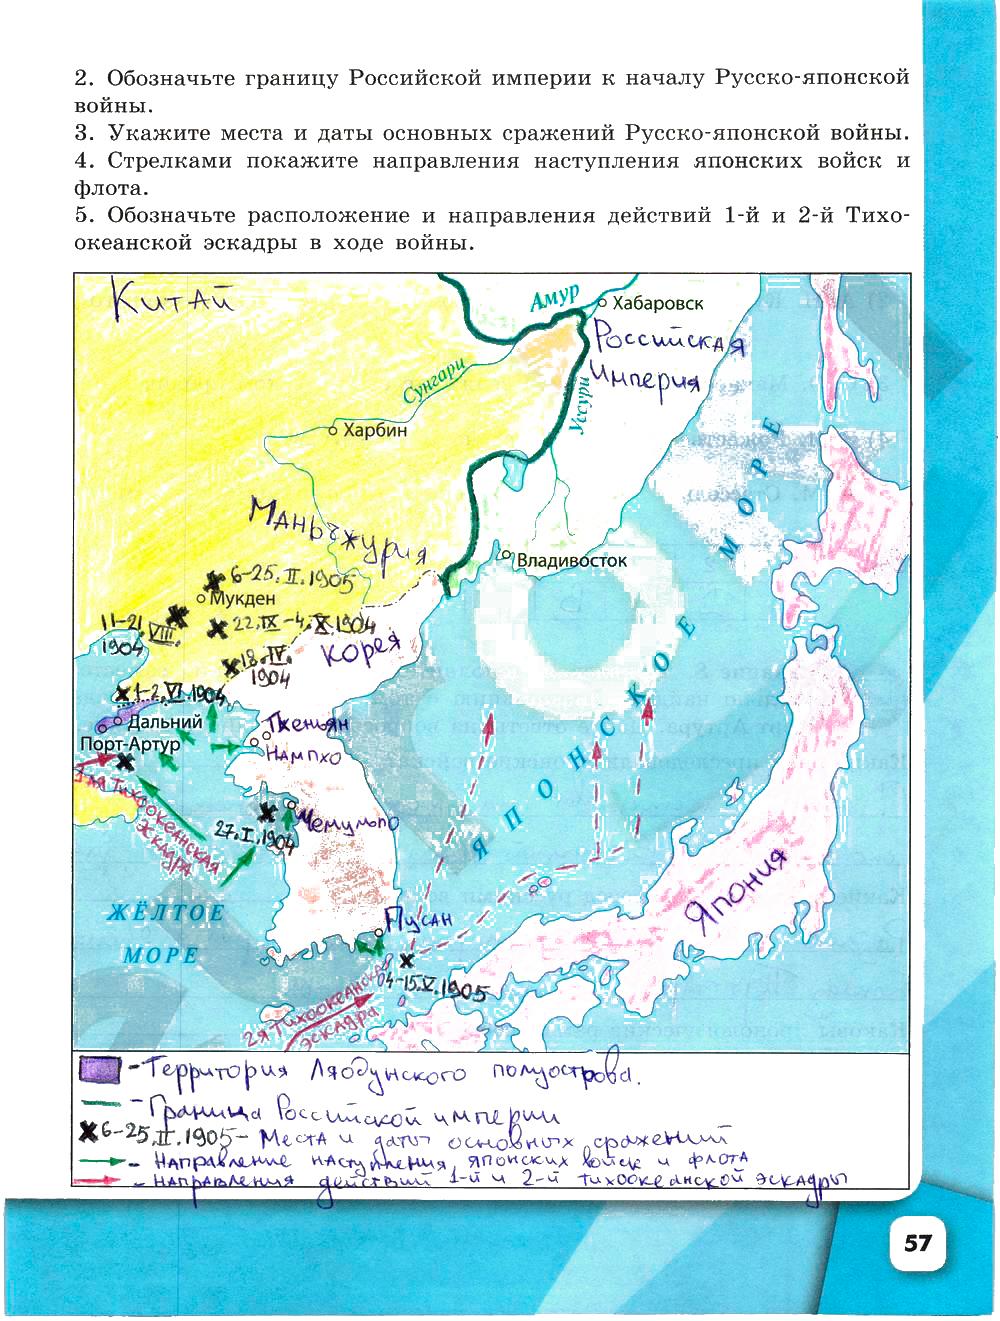 Гдз по истории россии 9 класс торкунов контурная карта